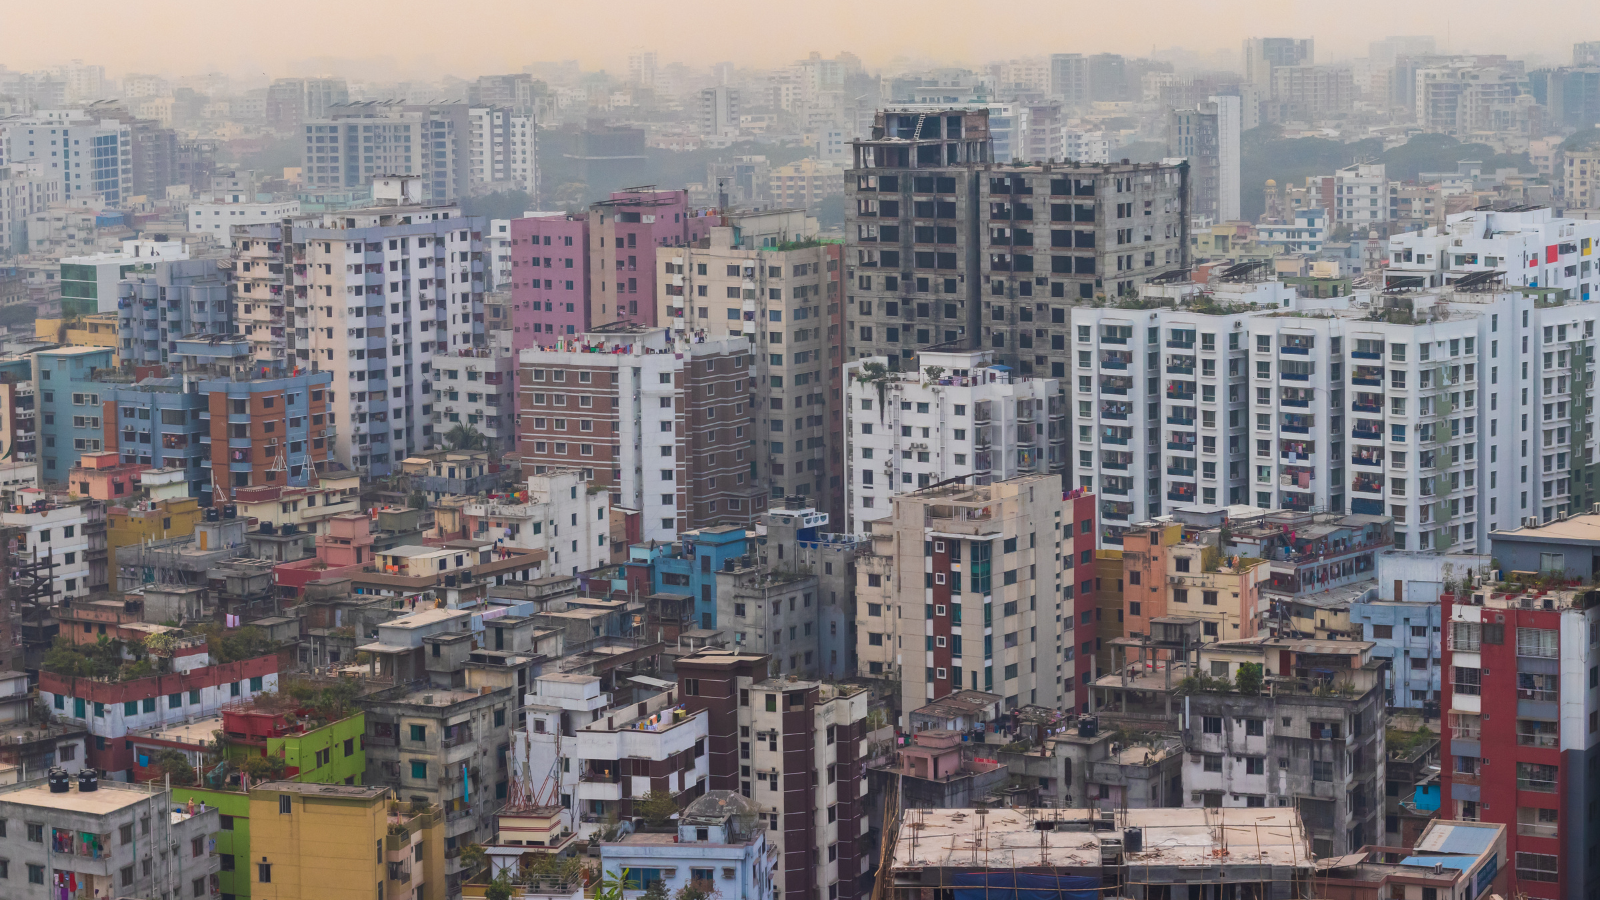 cityscape of Dhaka, Bangladesh